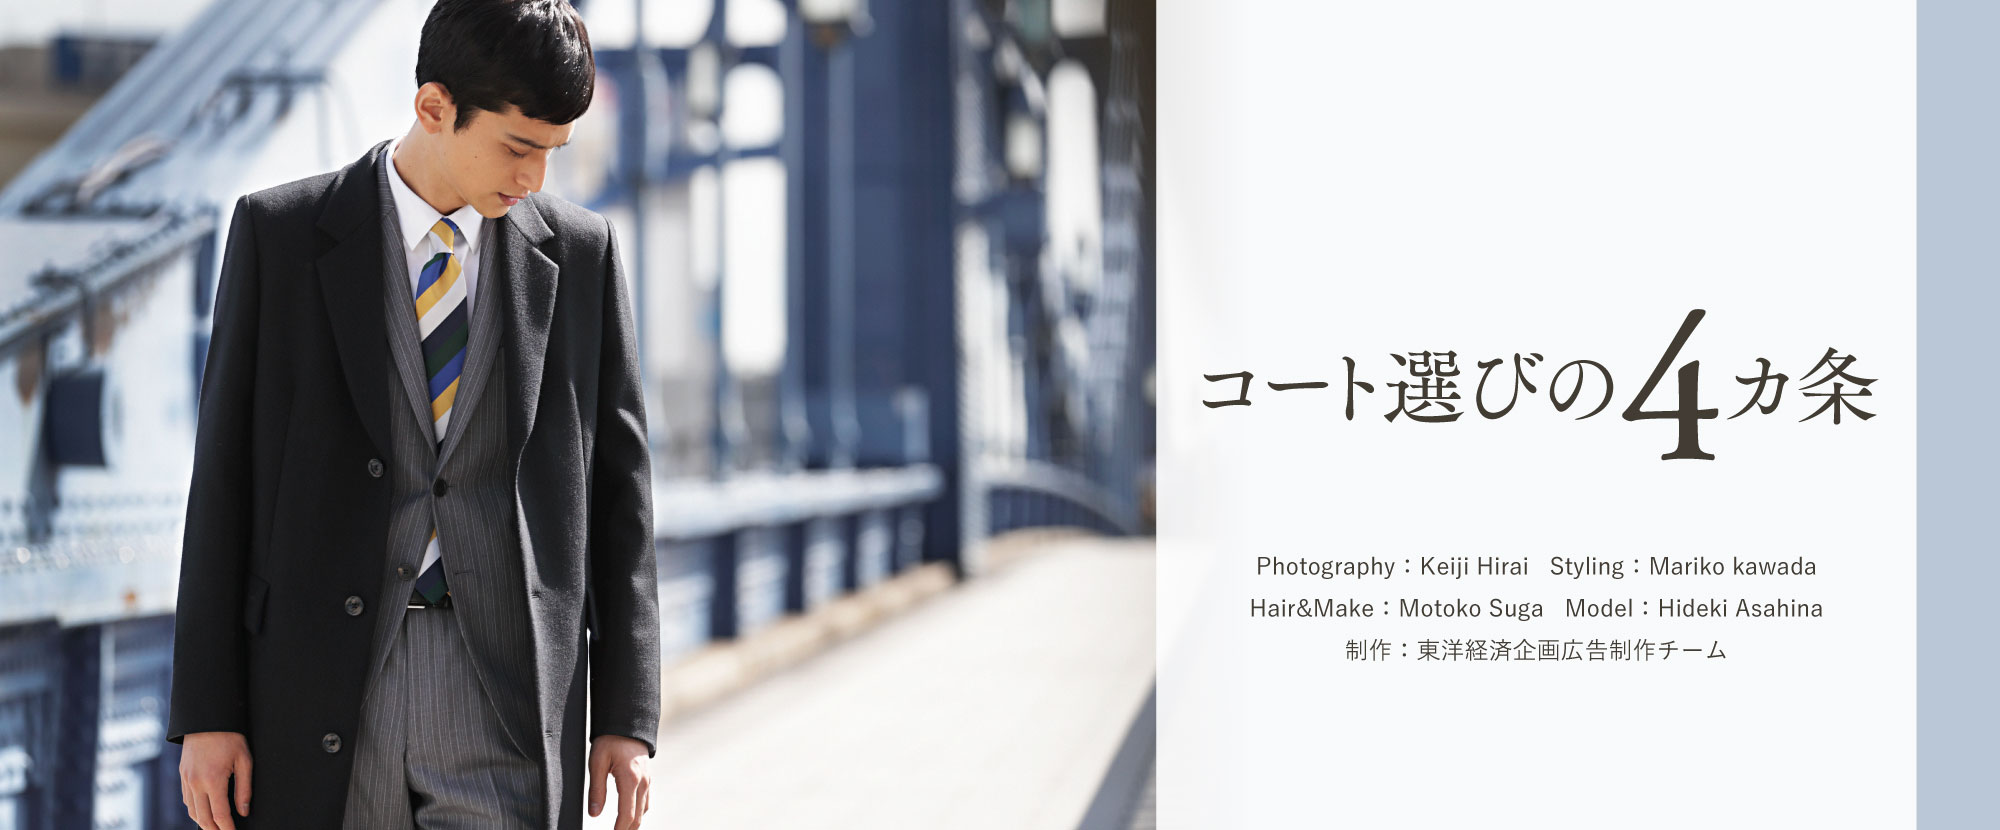 コート選びの4カ条 Photography：Keiji Hirai Styling：Mariko kawada Hair&Make：Motoko Suga Model：Hideki Asahina
制作：東洋経済企画広告制作チーム